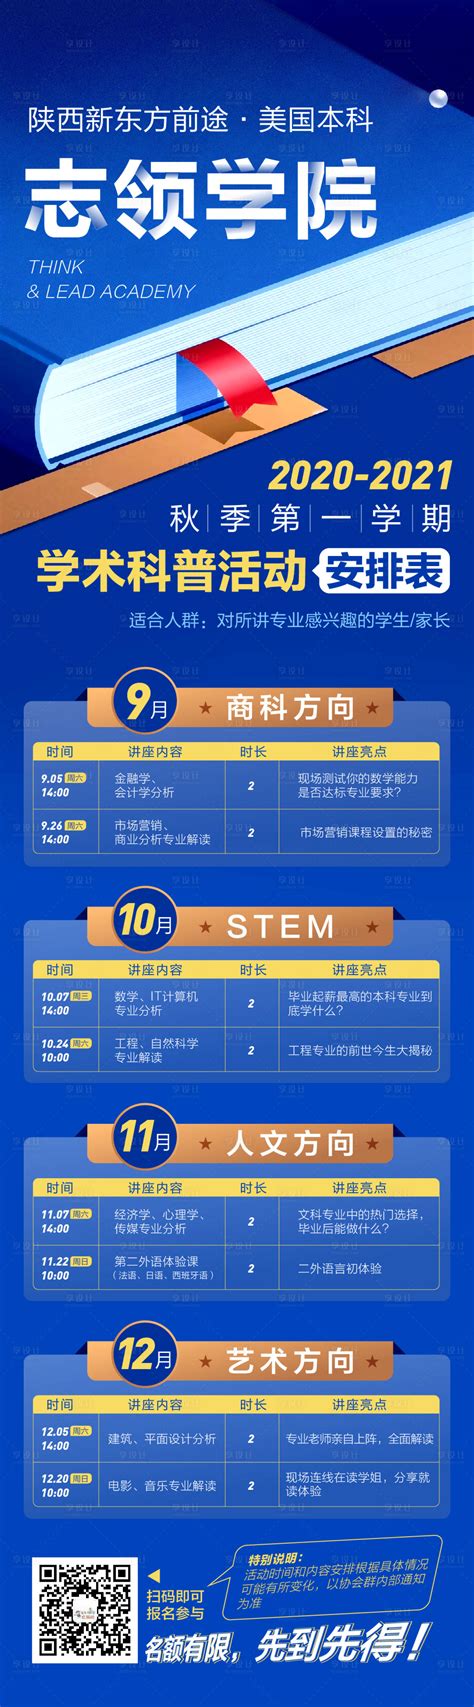 科研课题整体服务 - 上海逐一生物科技有限公司